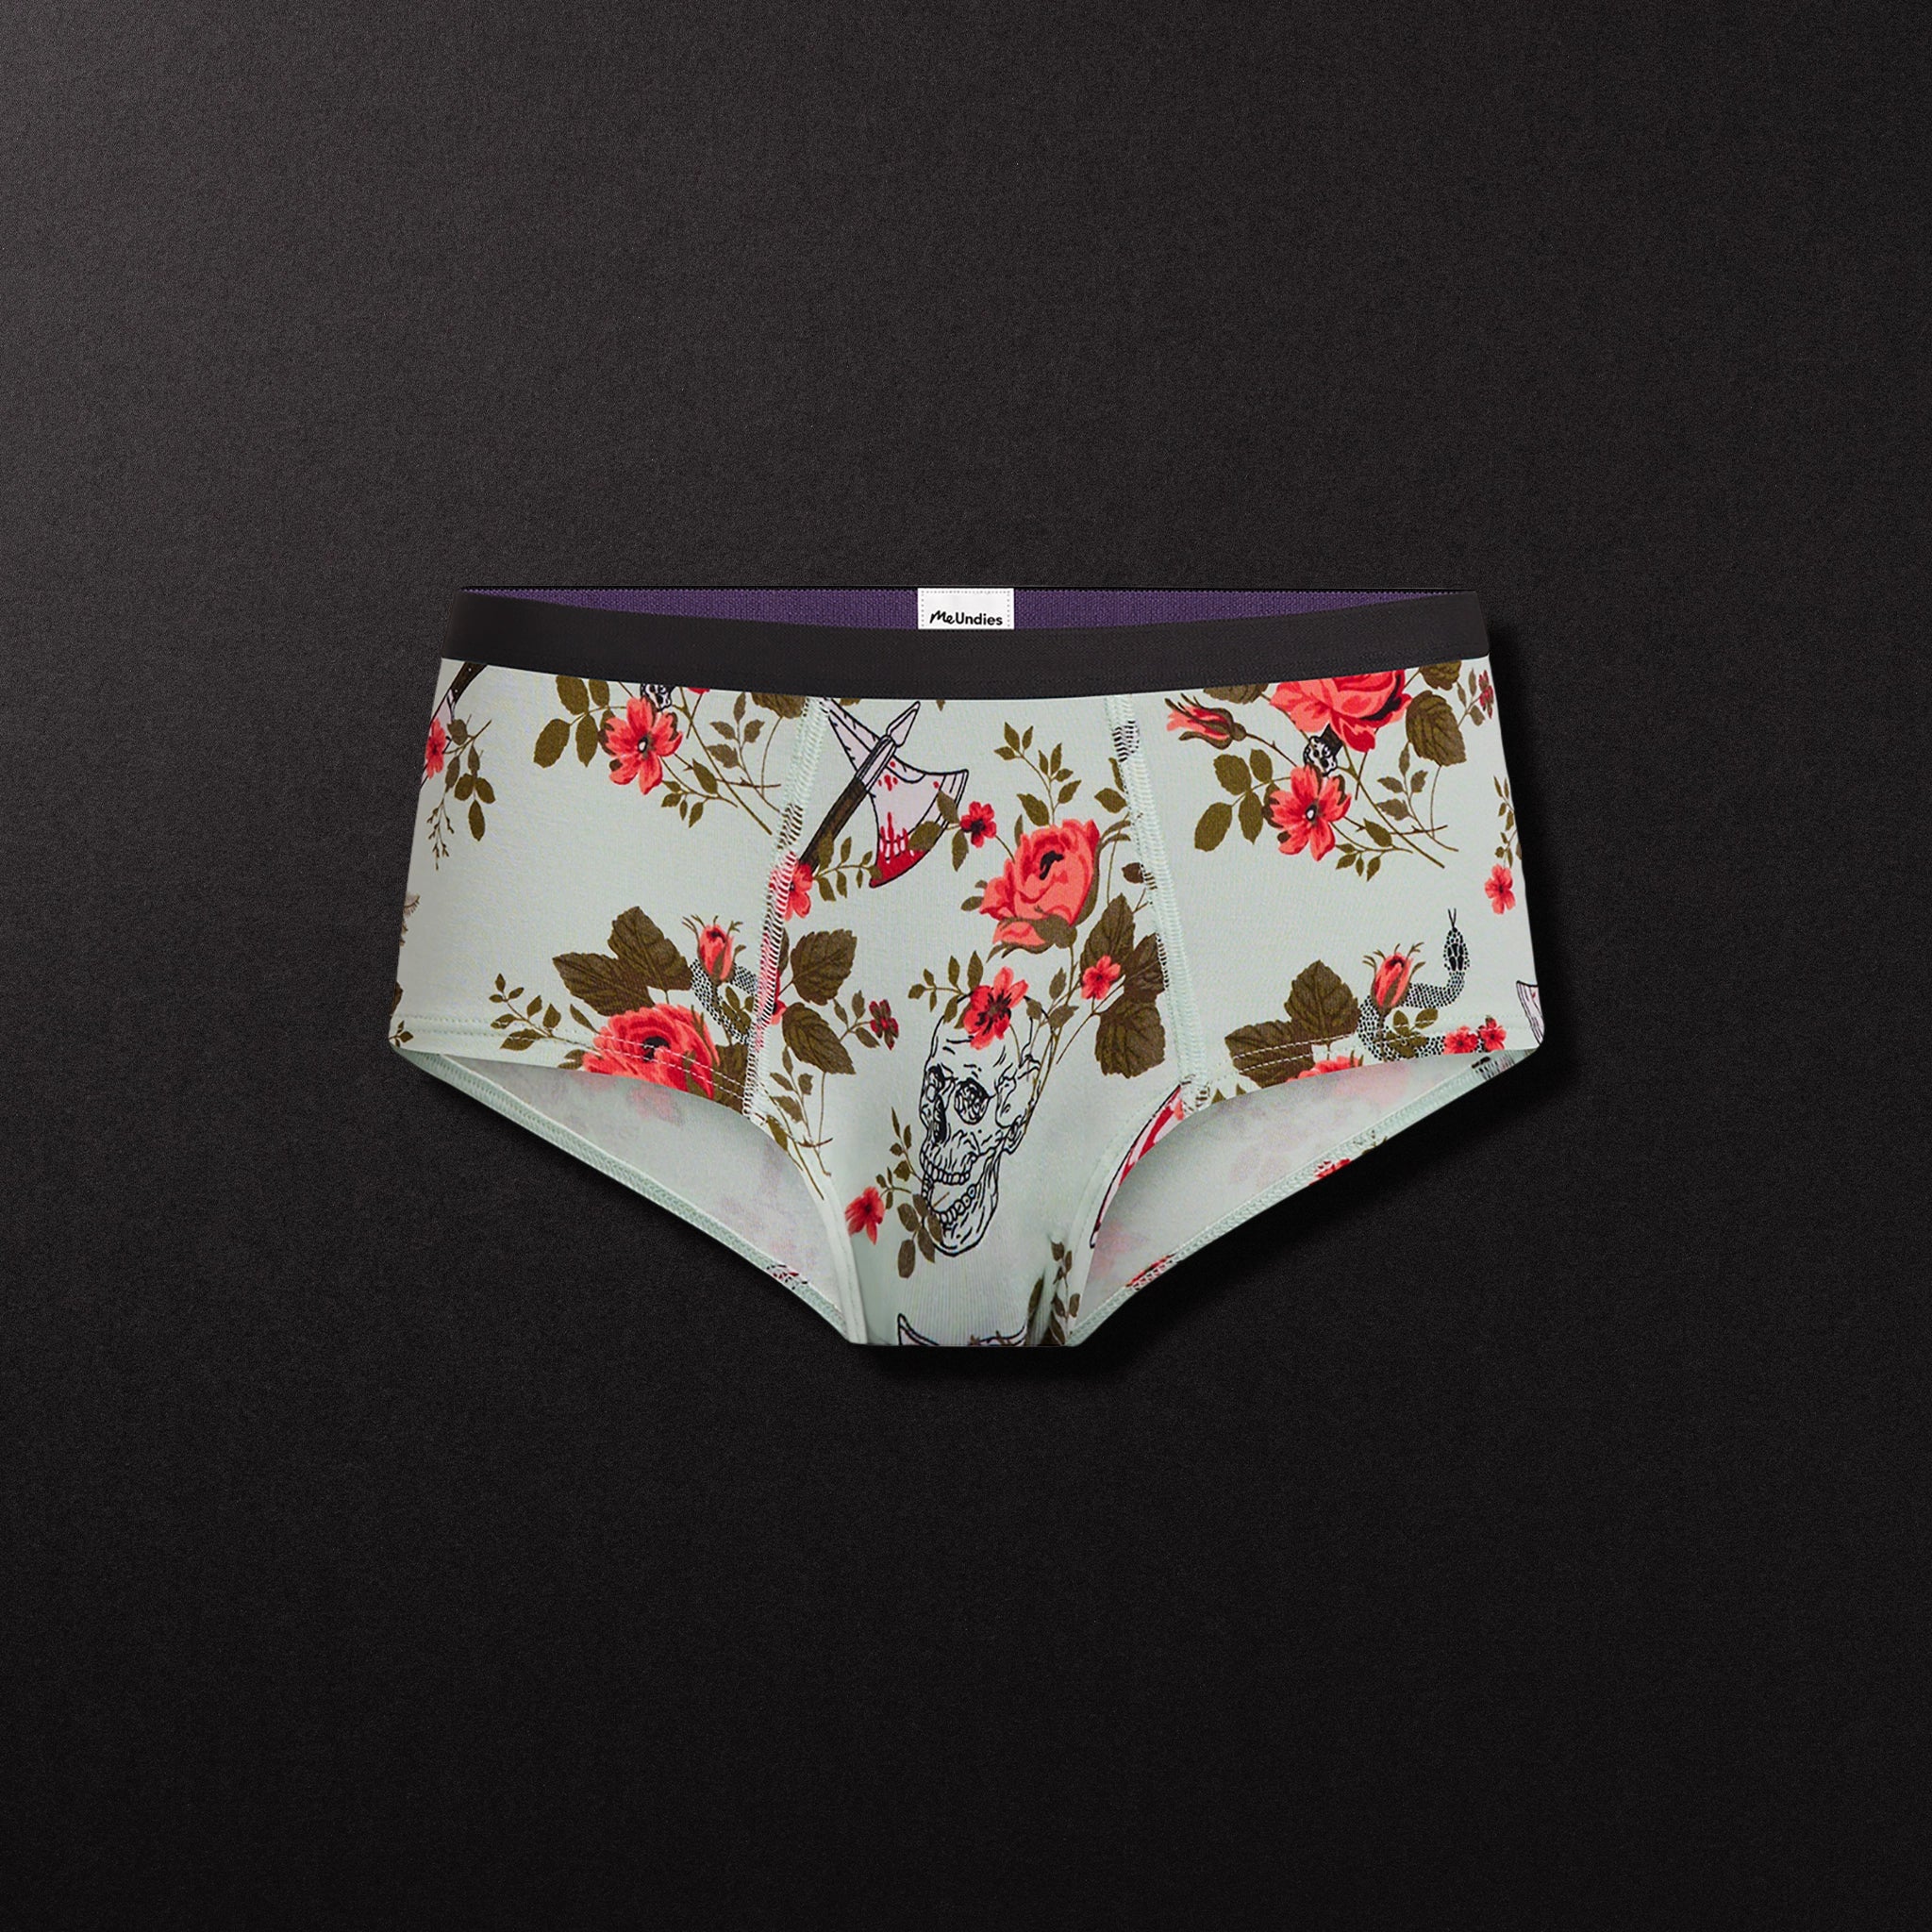 MeUndies - These undies are 🔥no literally.⁠